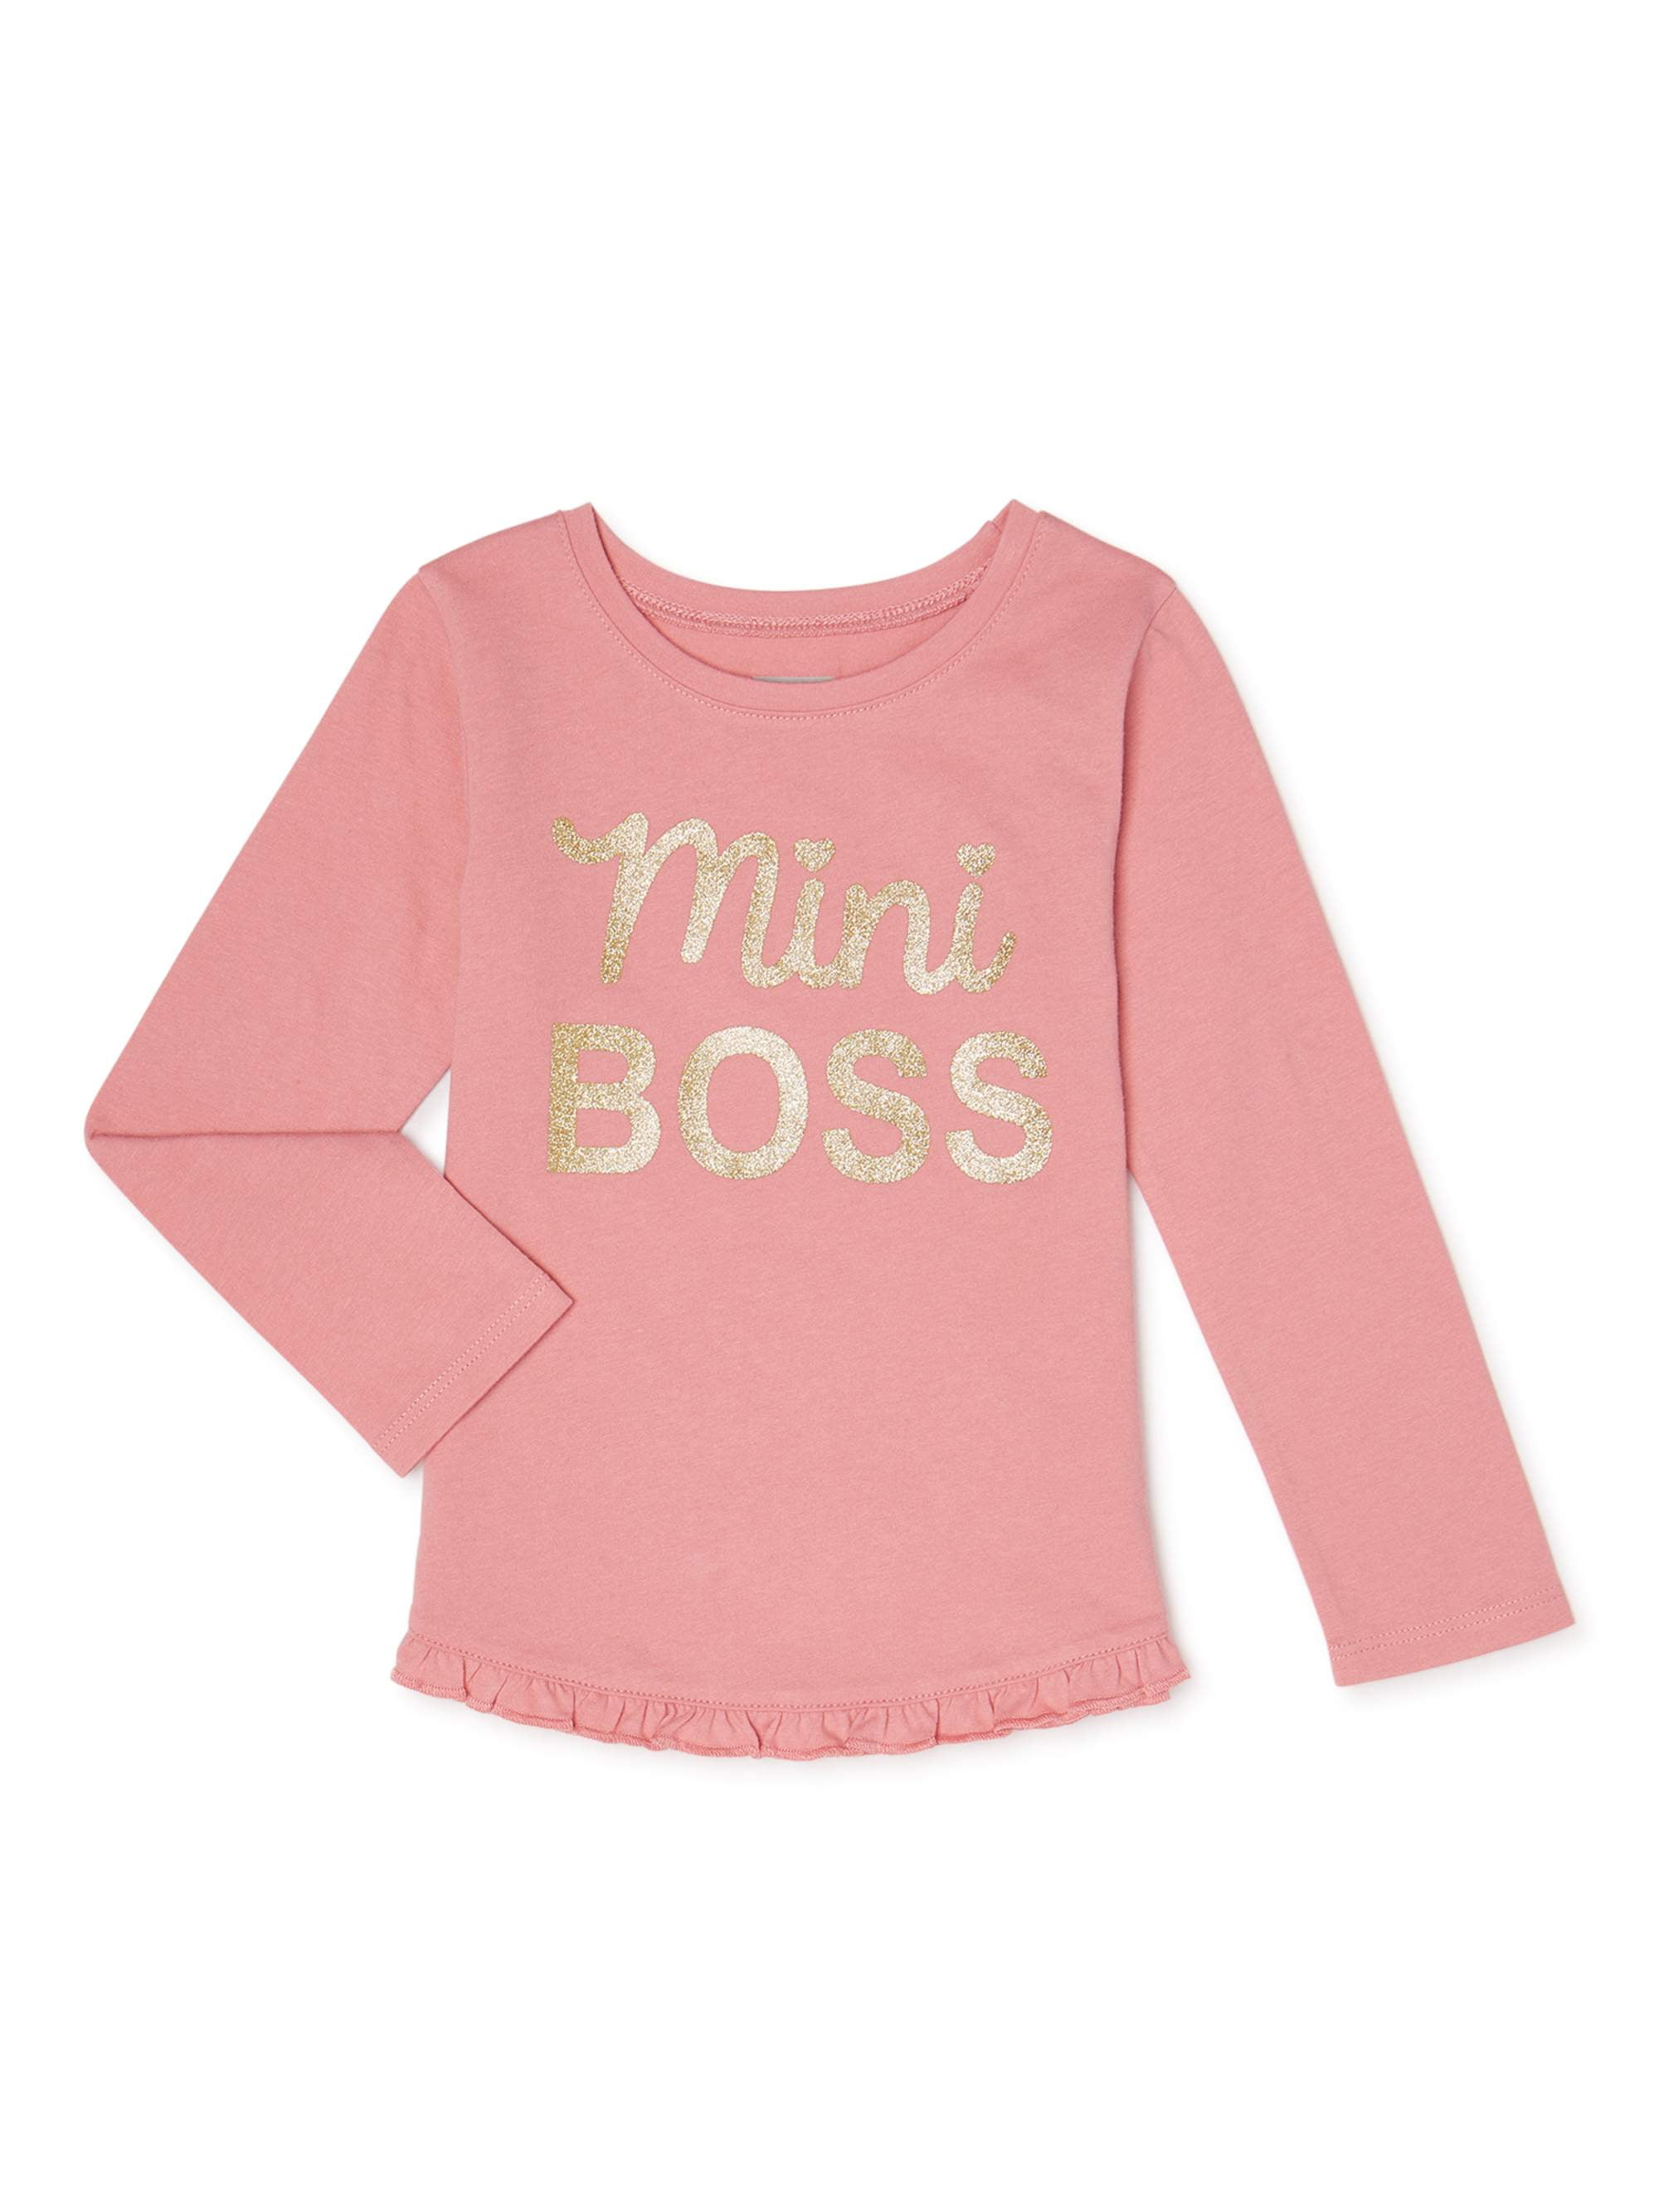 mini boss shirt